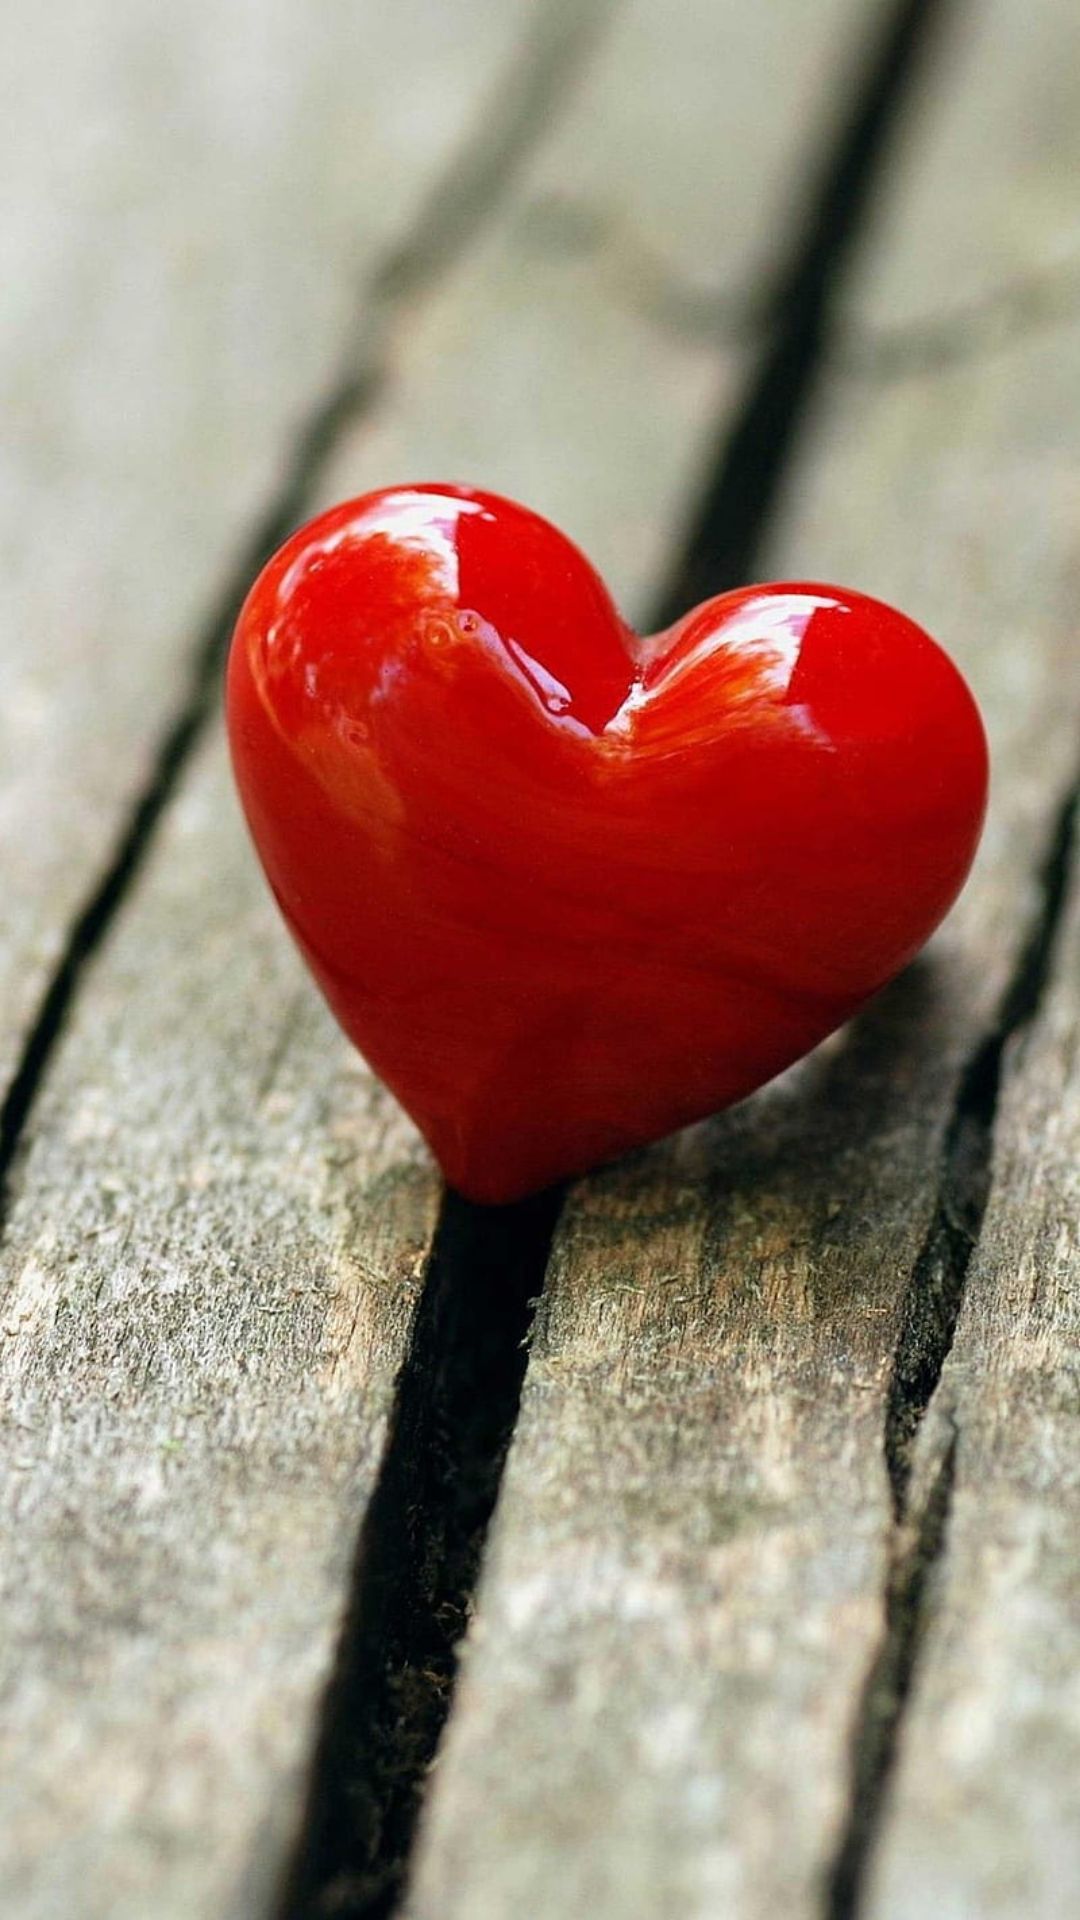 Heart Wallpapers - Top 35 Best Heart Wallpapers Download